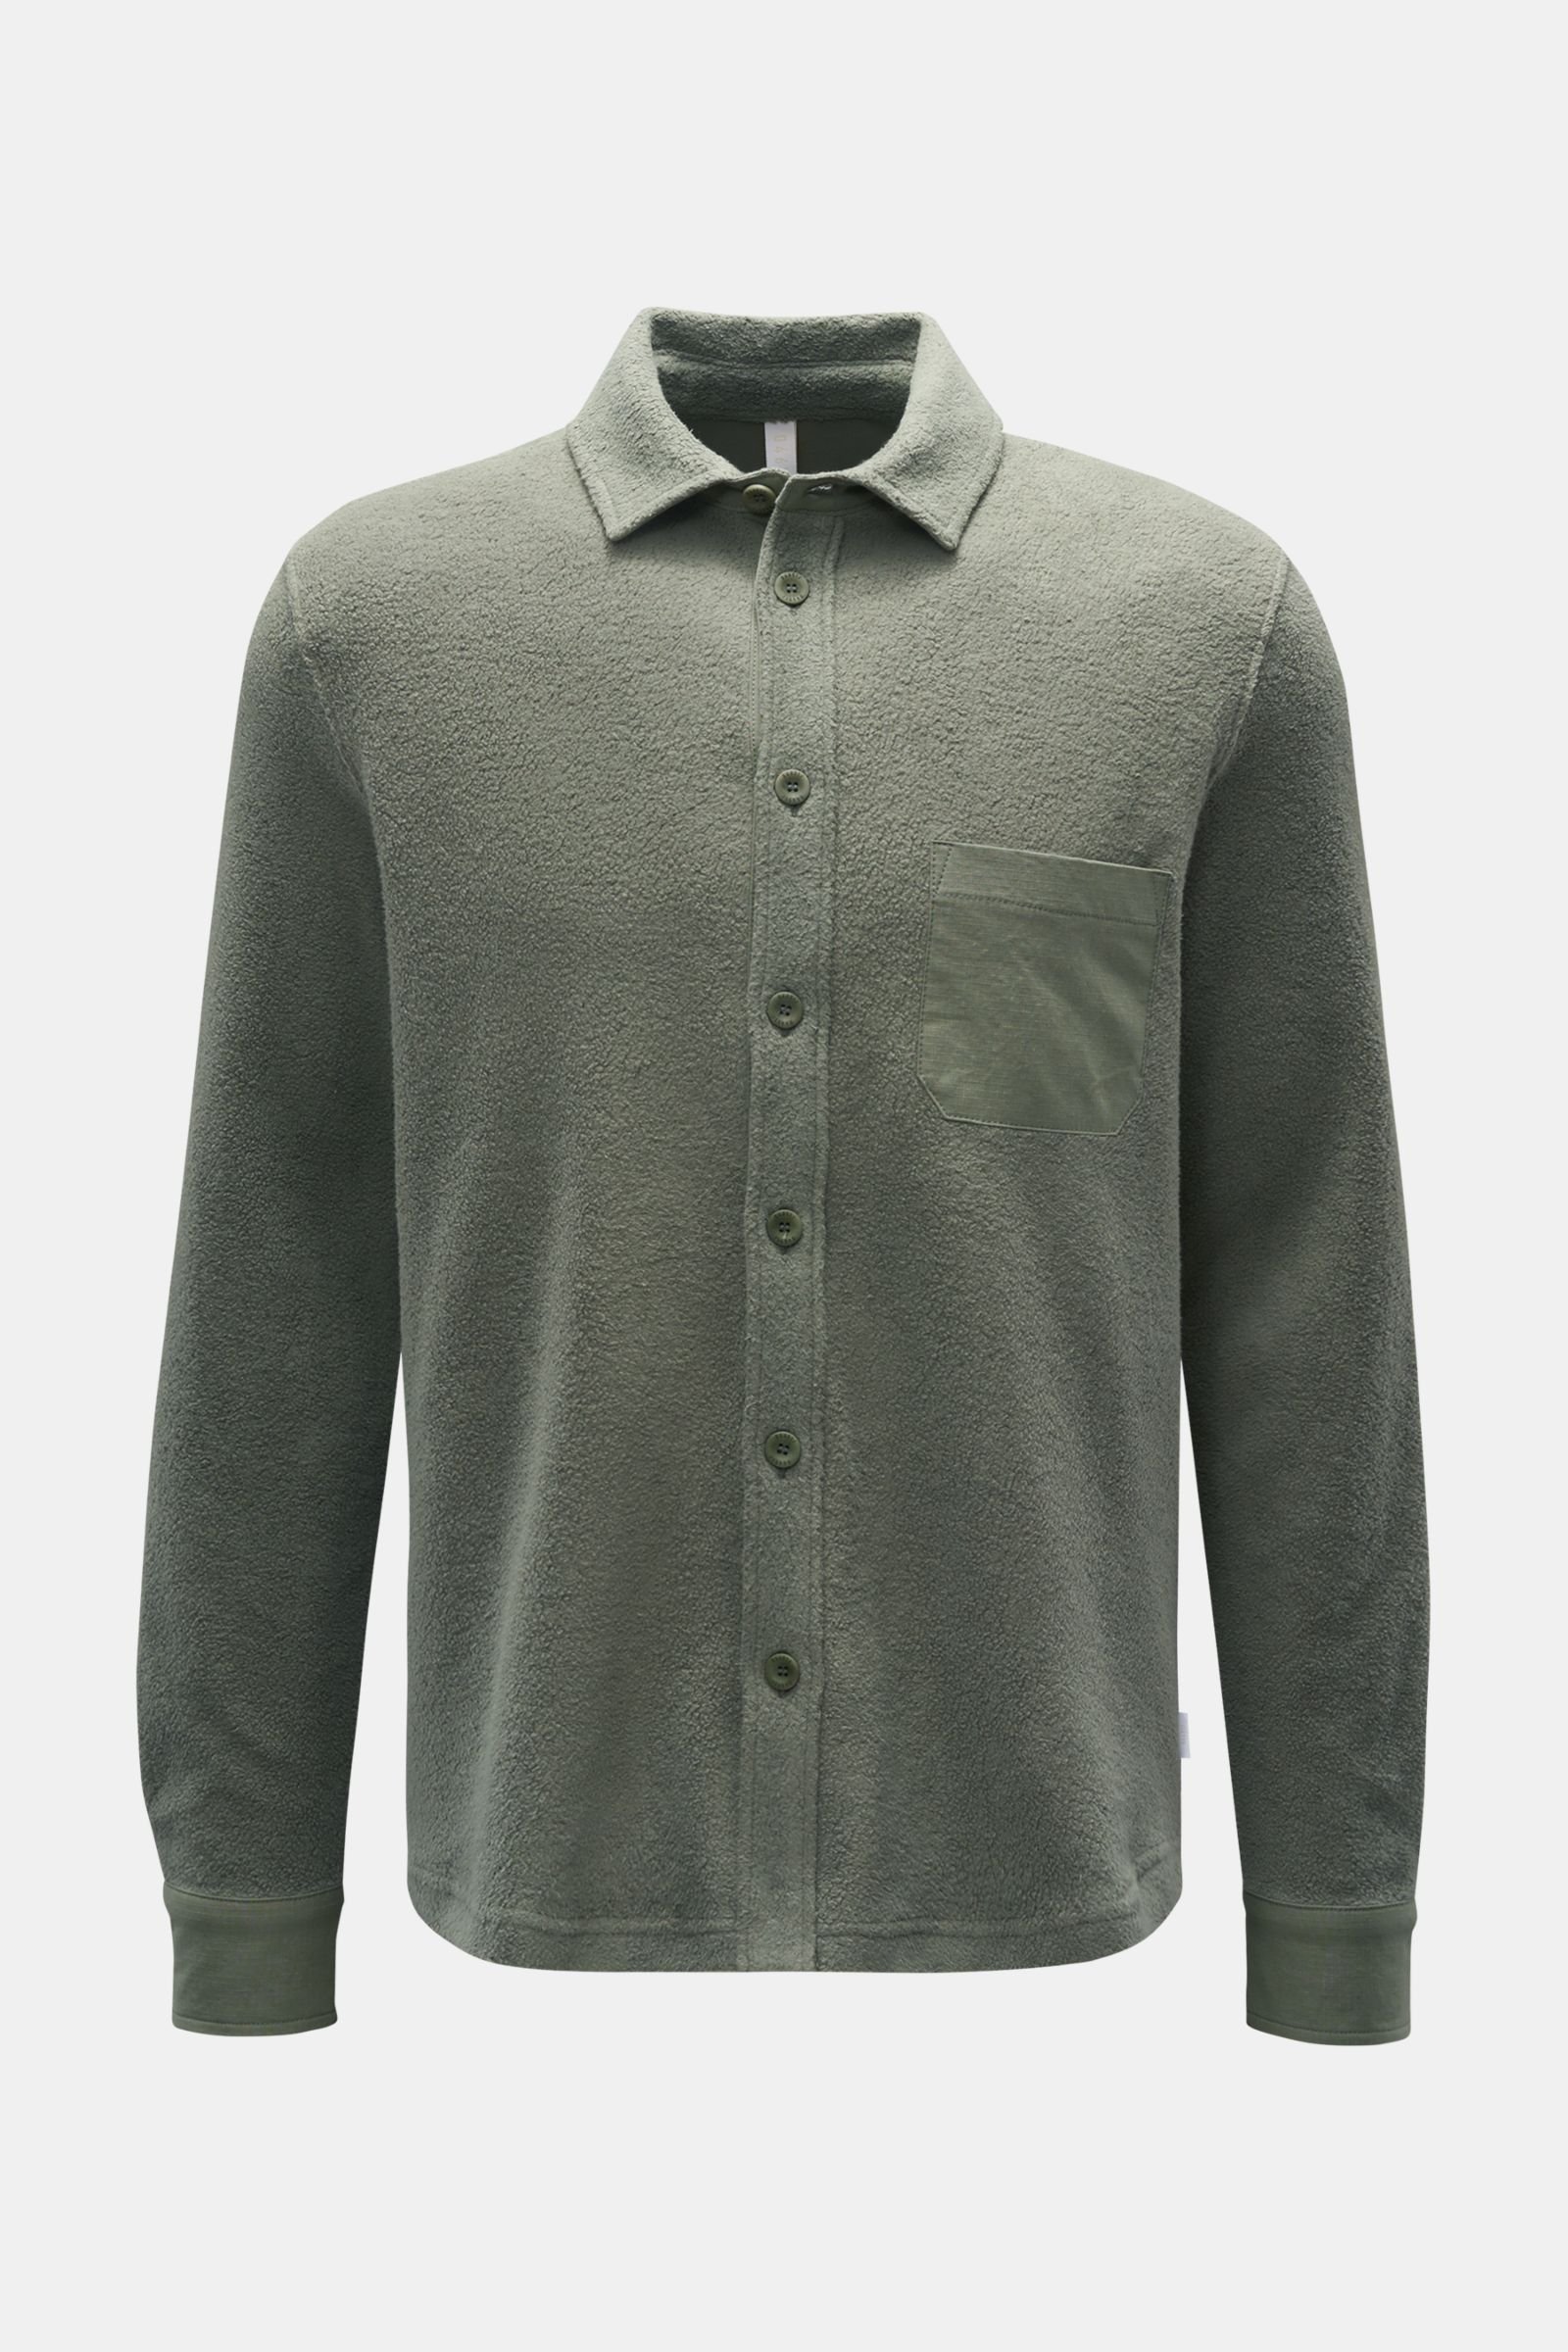 Fleece shirt grey-green